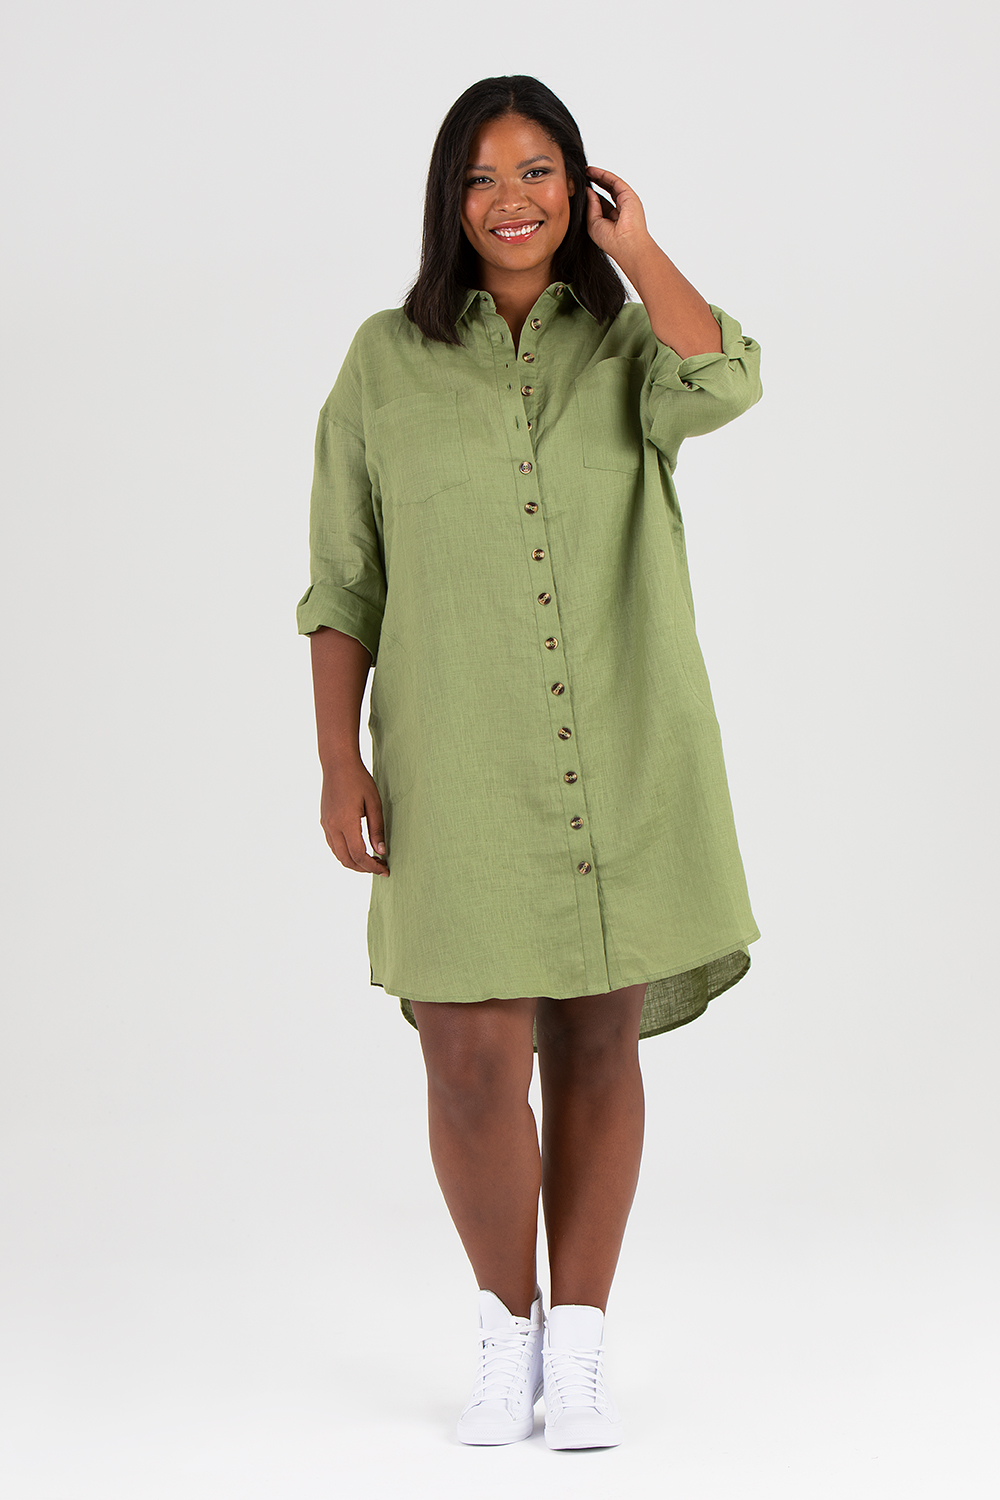 Mynta klänning / skjorta grön